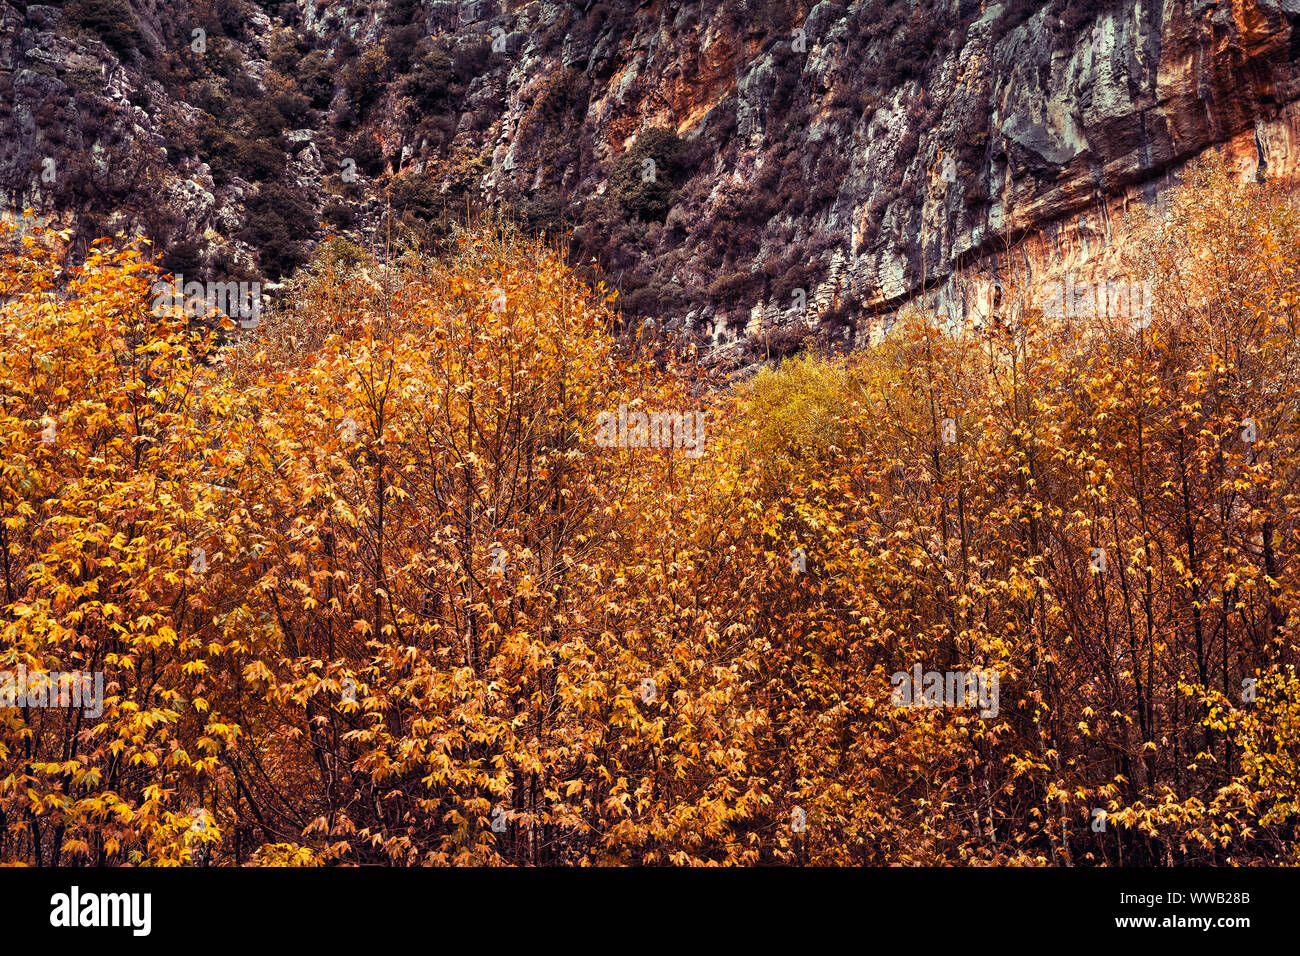 Schönheit der Herbst, Bäume mit goldenen Laub unter großer Berg, abstrakte natürlichen Hintergrund, die Veränderung der Jahreszeiten Konzept Stockfoto